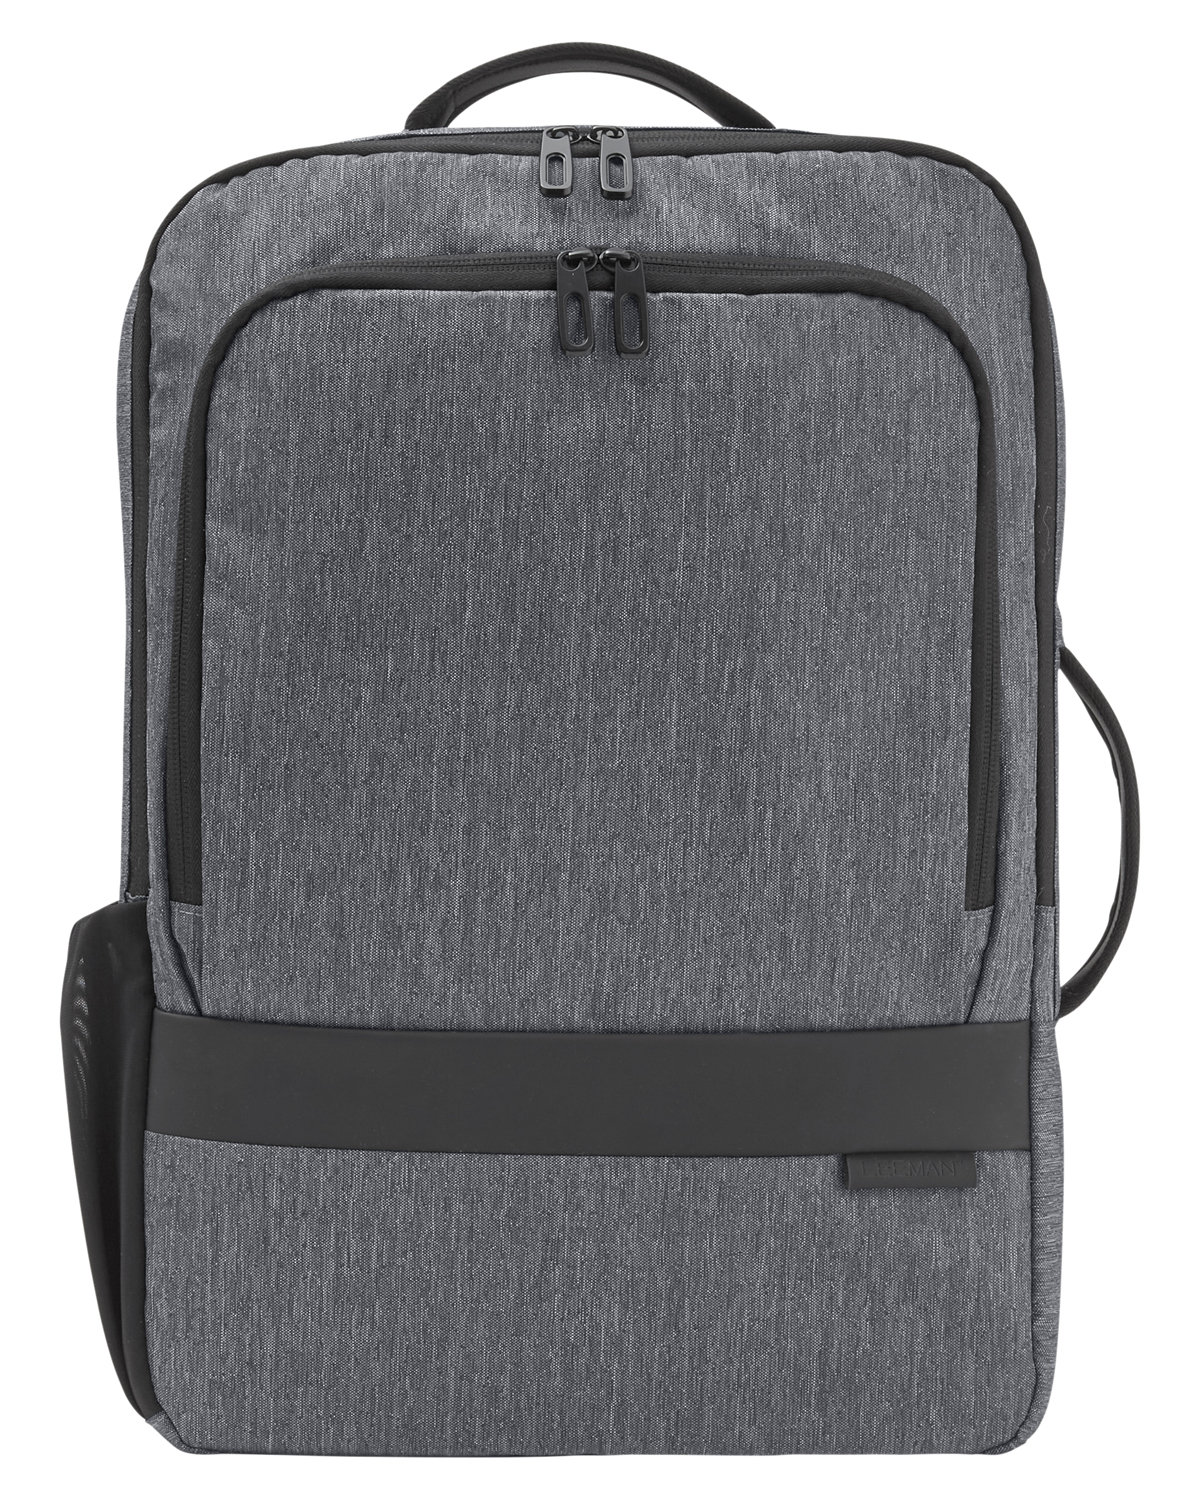 Versa Compu Backpack-